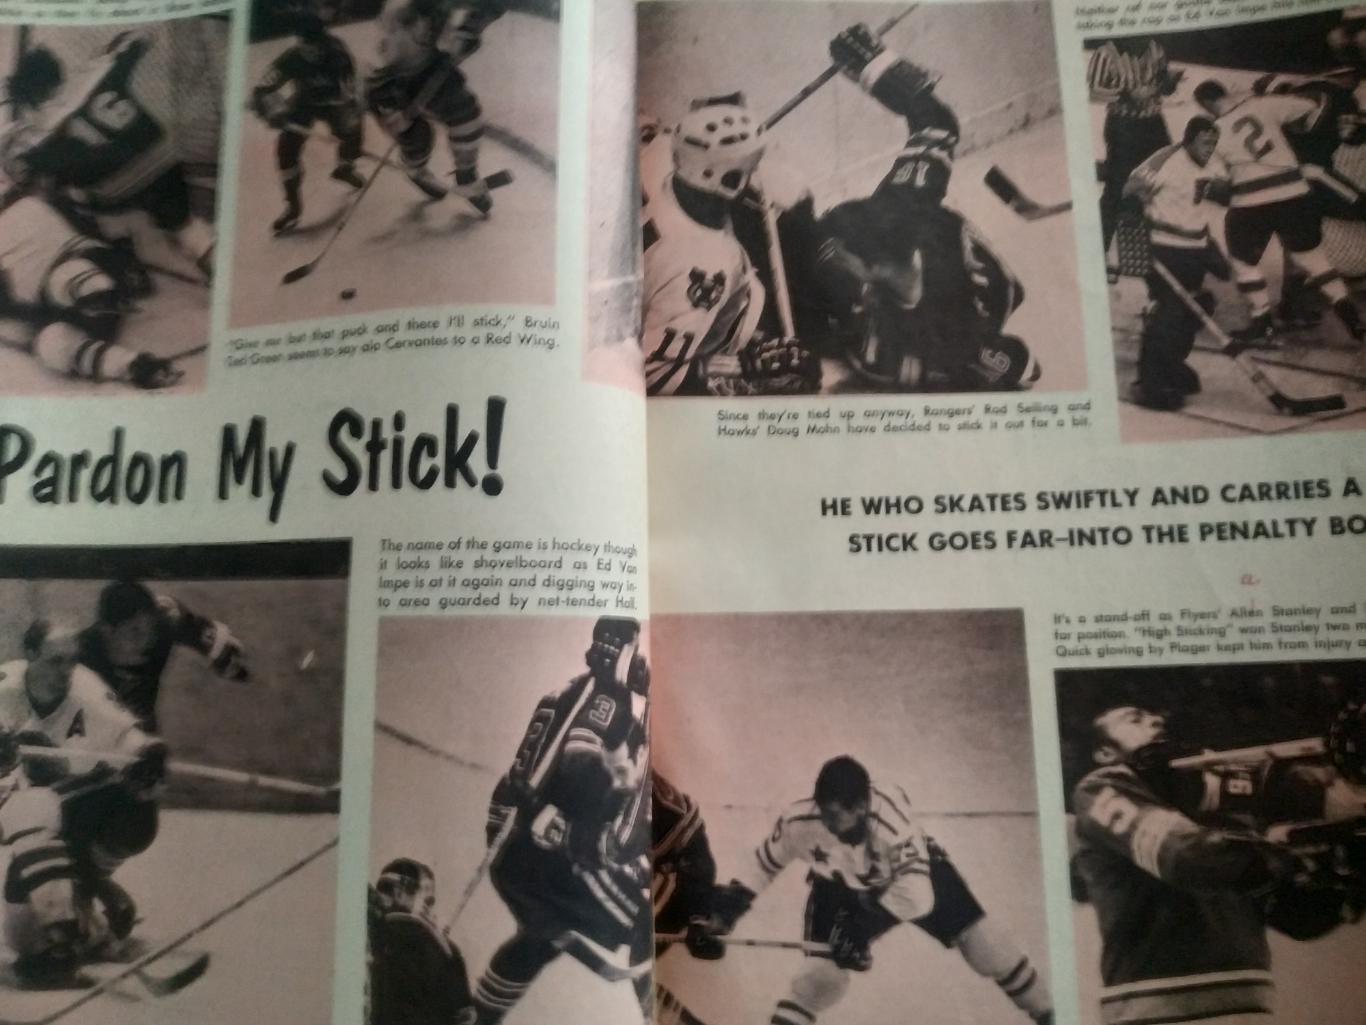 ЖУРНАЛ СПРАВОЧНИК НХЛ СПОРТ РЕВЬЮ ПРО ХОКЕЕЙ 1969-70 NHL SPORT REVIEW PRO HOCKEY 5